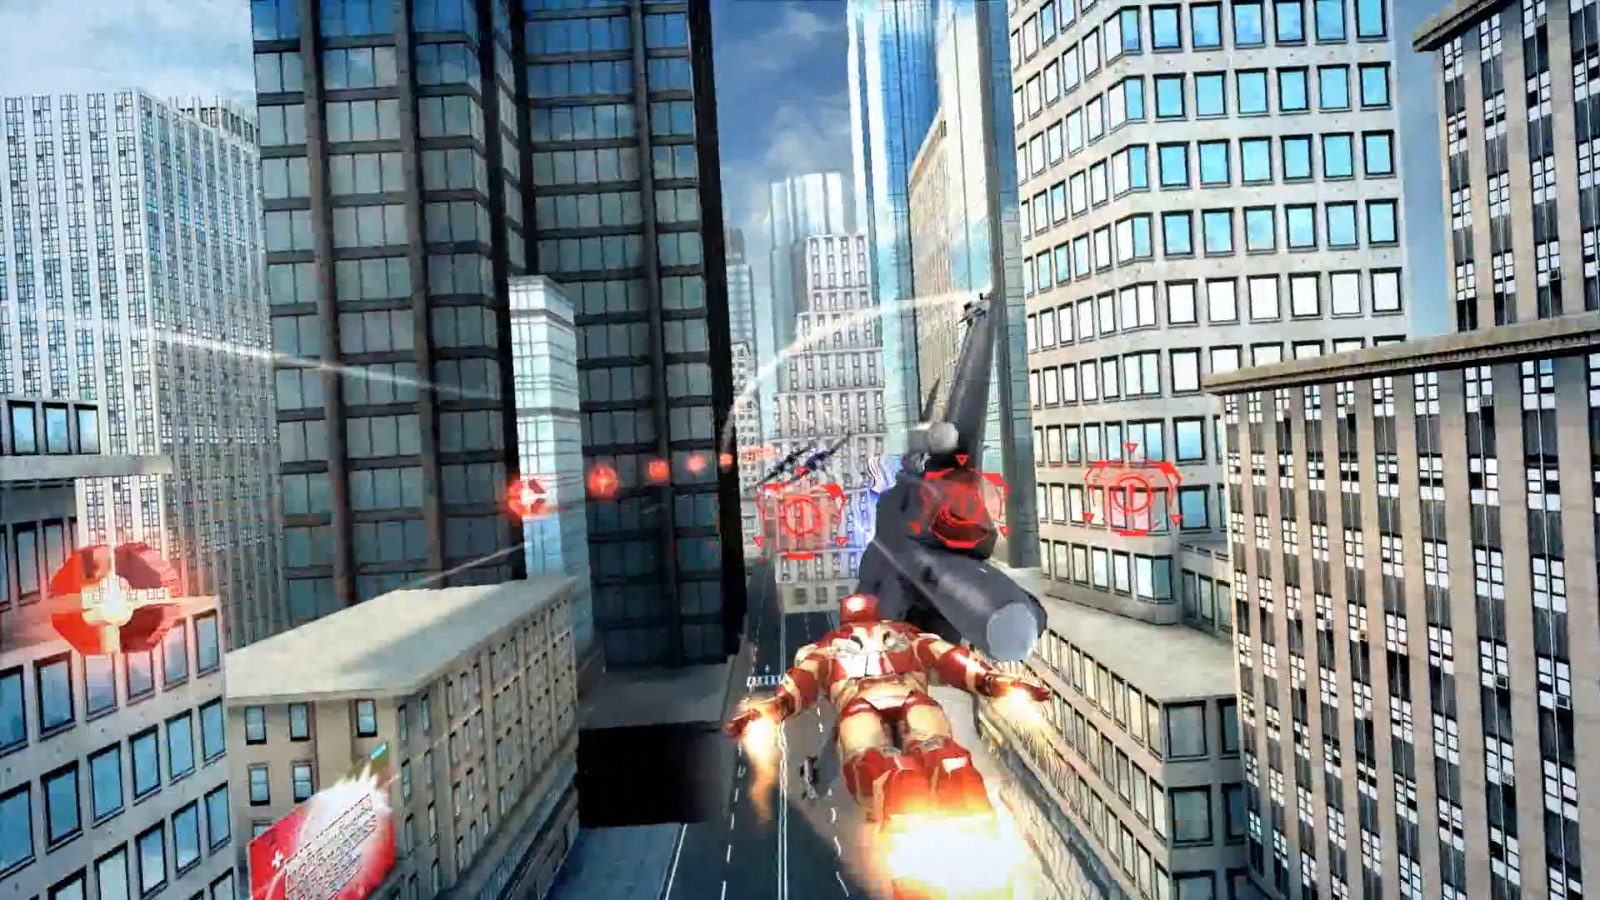 Включи игру за окном. Iron man 3 игра. Iron man (игра, 2008). Железный человек 3 игра на андроид. Железный человек 3 - официальная игра.